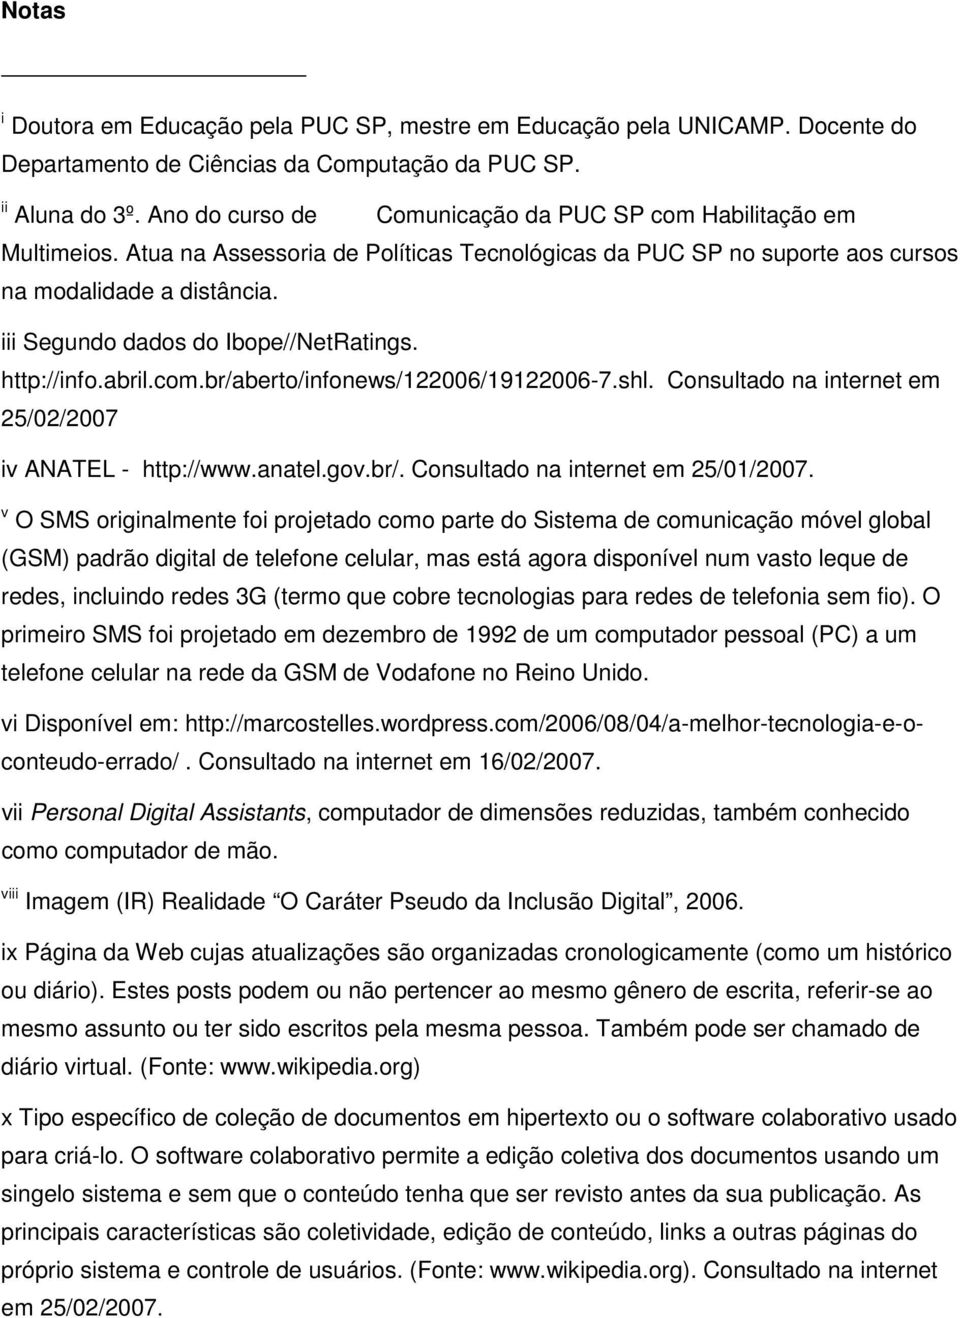 iii Segundo dados do Ibope//NetRatings. http://info.abril.com.br/aberto/infonews/122006/19122006-7.shl. Consultado na internet em 25/02/2007 iv ANATEL - http://www.anatel.gov.br/. Consultado na internet em 25/01/2007.